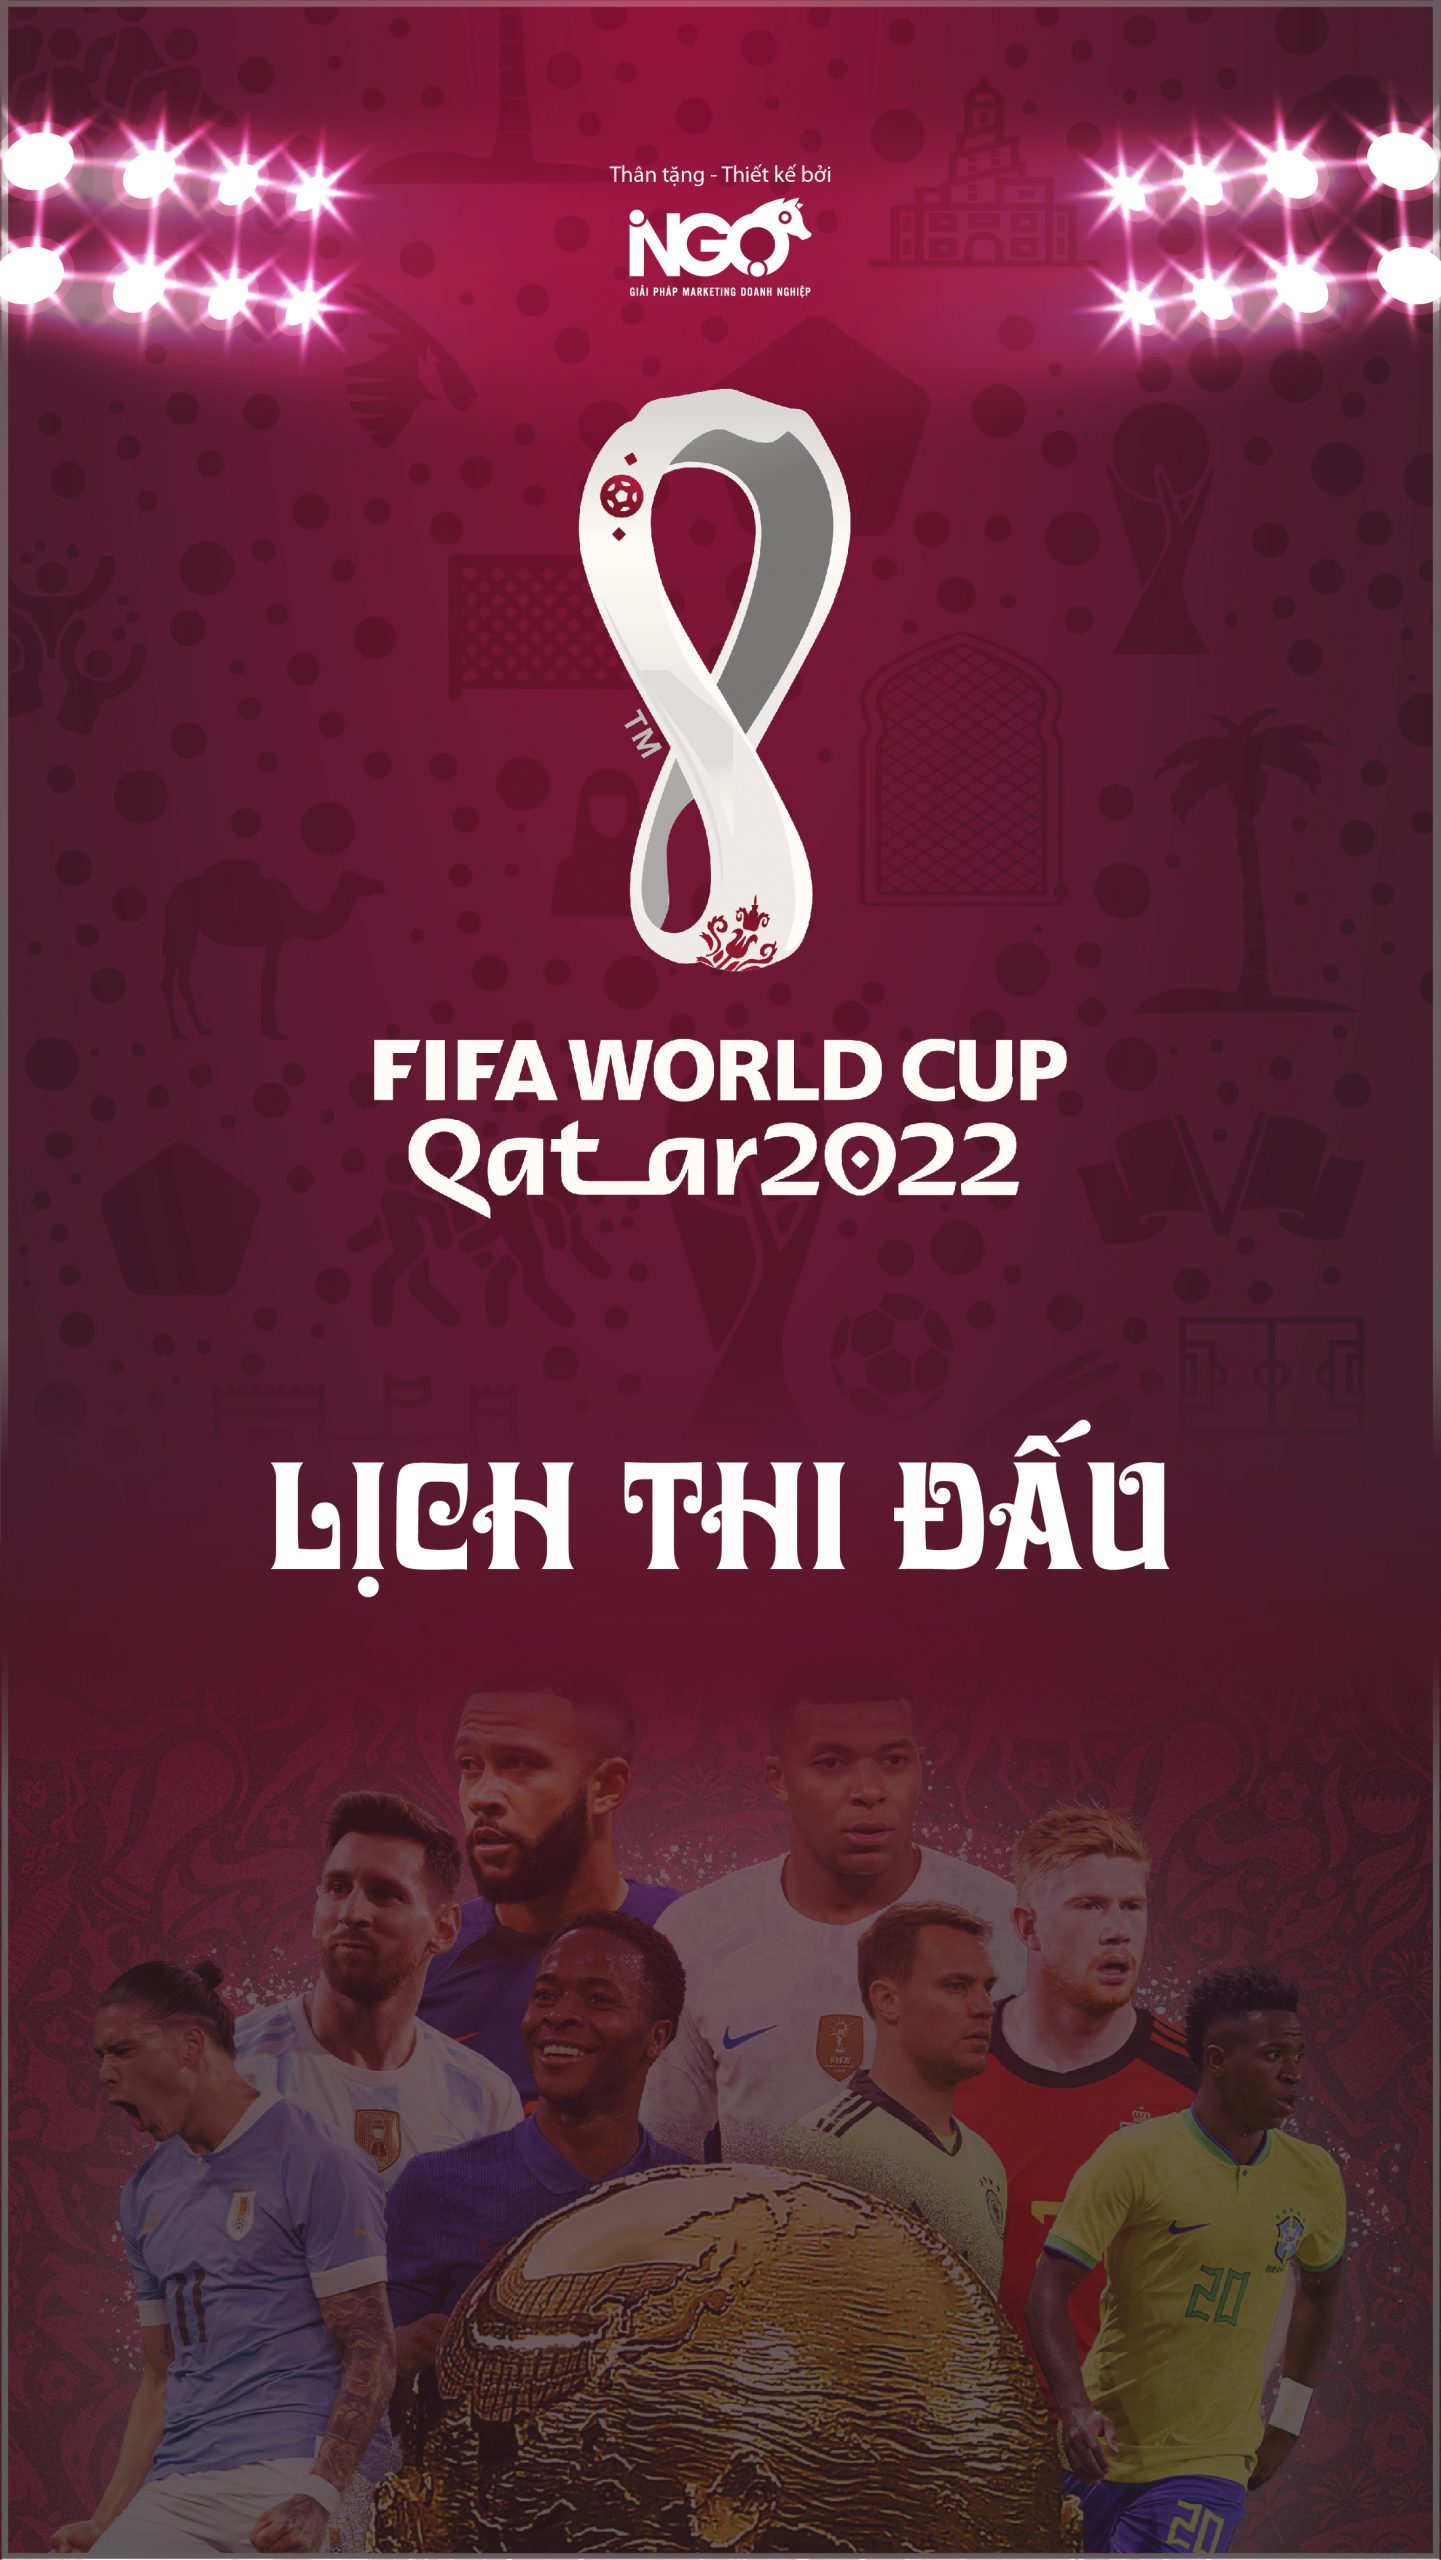 tải miễn phí lịch thi đấu world cup 2022 qatar